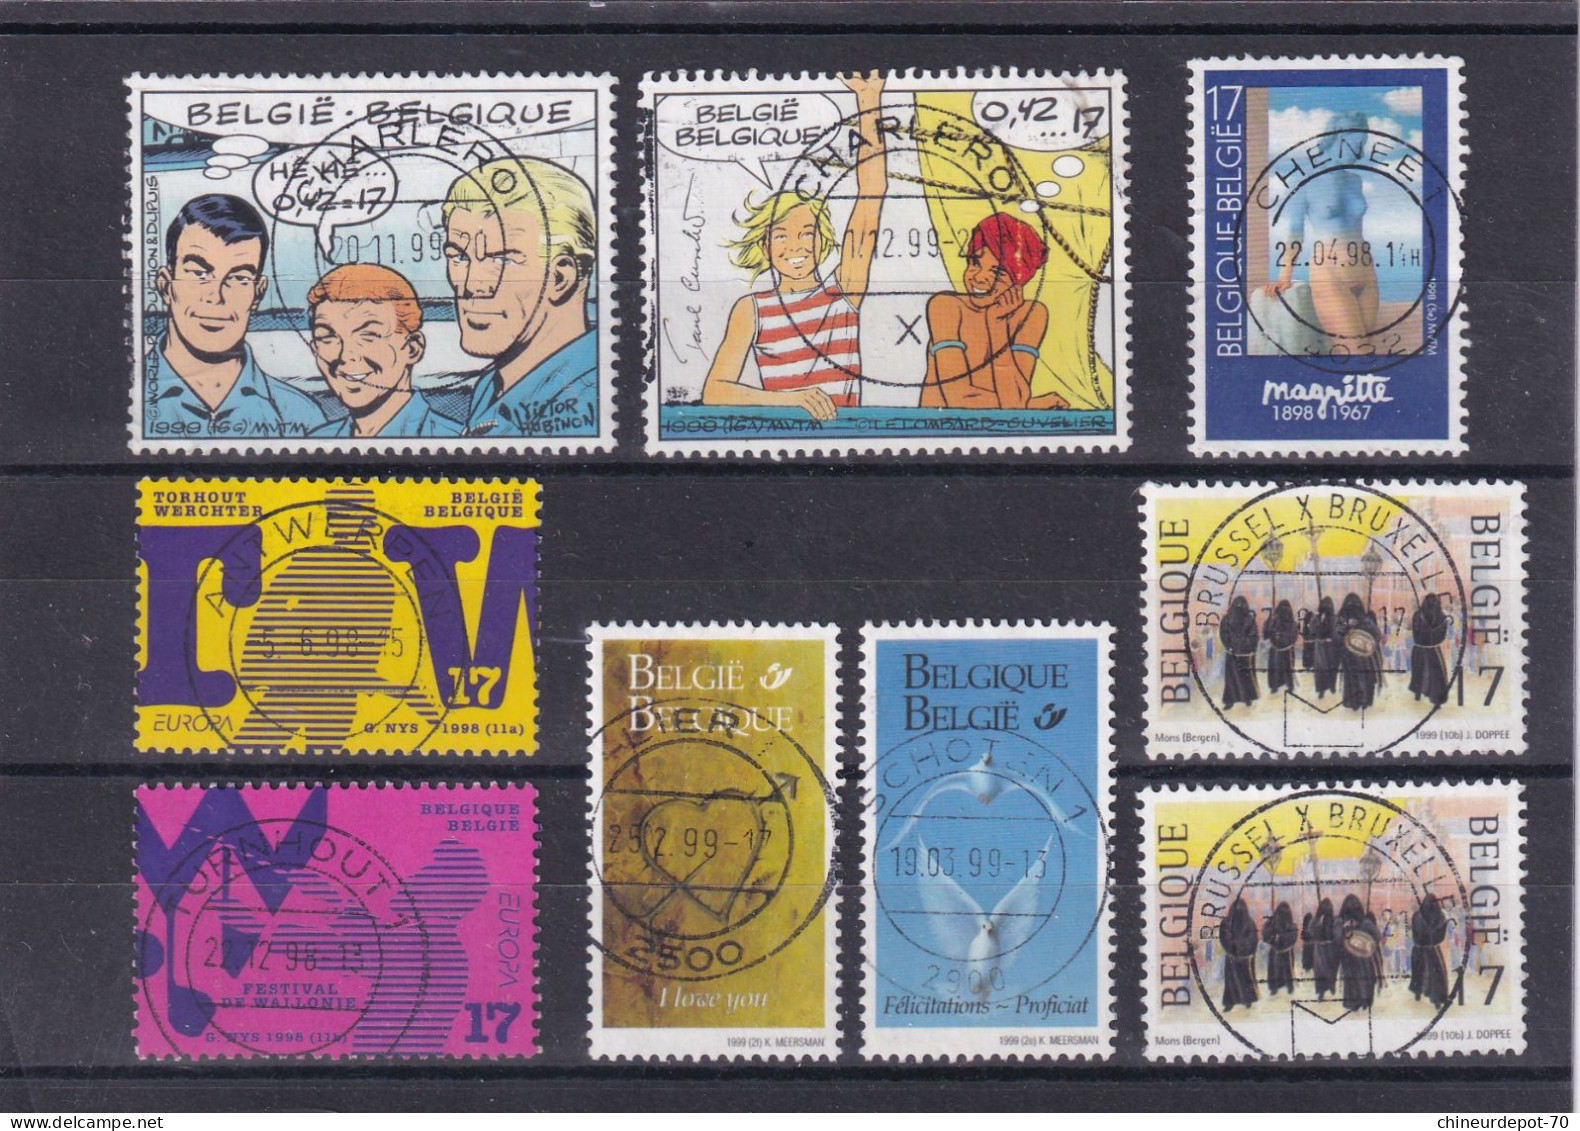 collection lot de timbres belge voir 10 photos beau cachet central